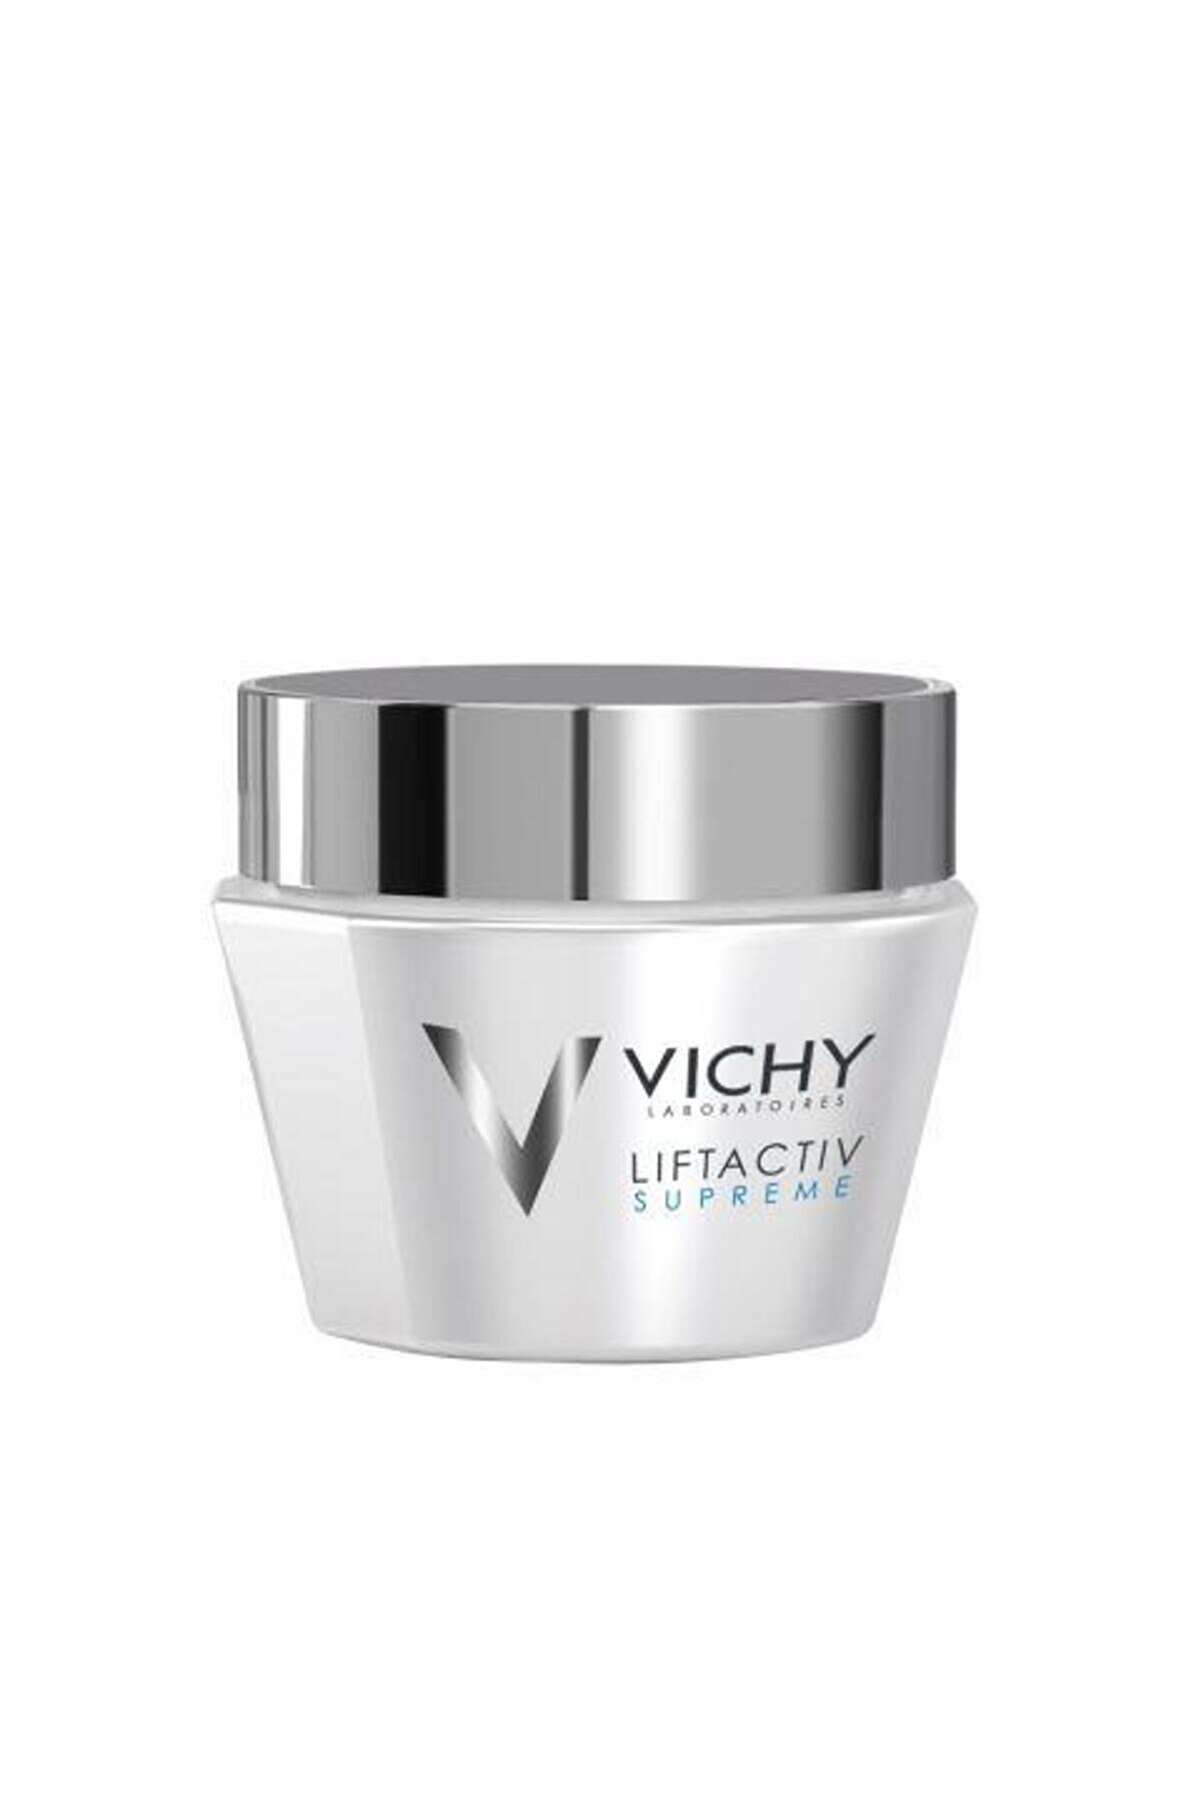 Vichy Liftactiv Supreme Pnm 50ml